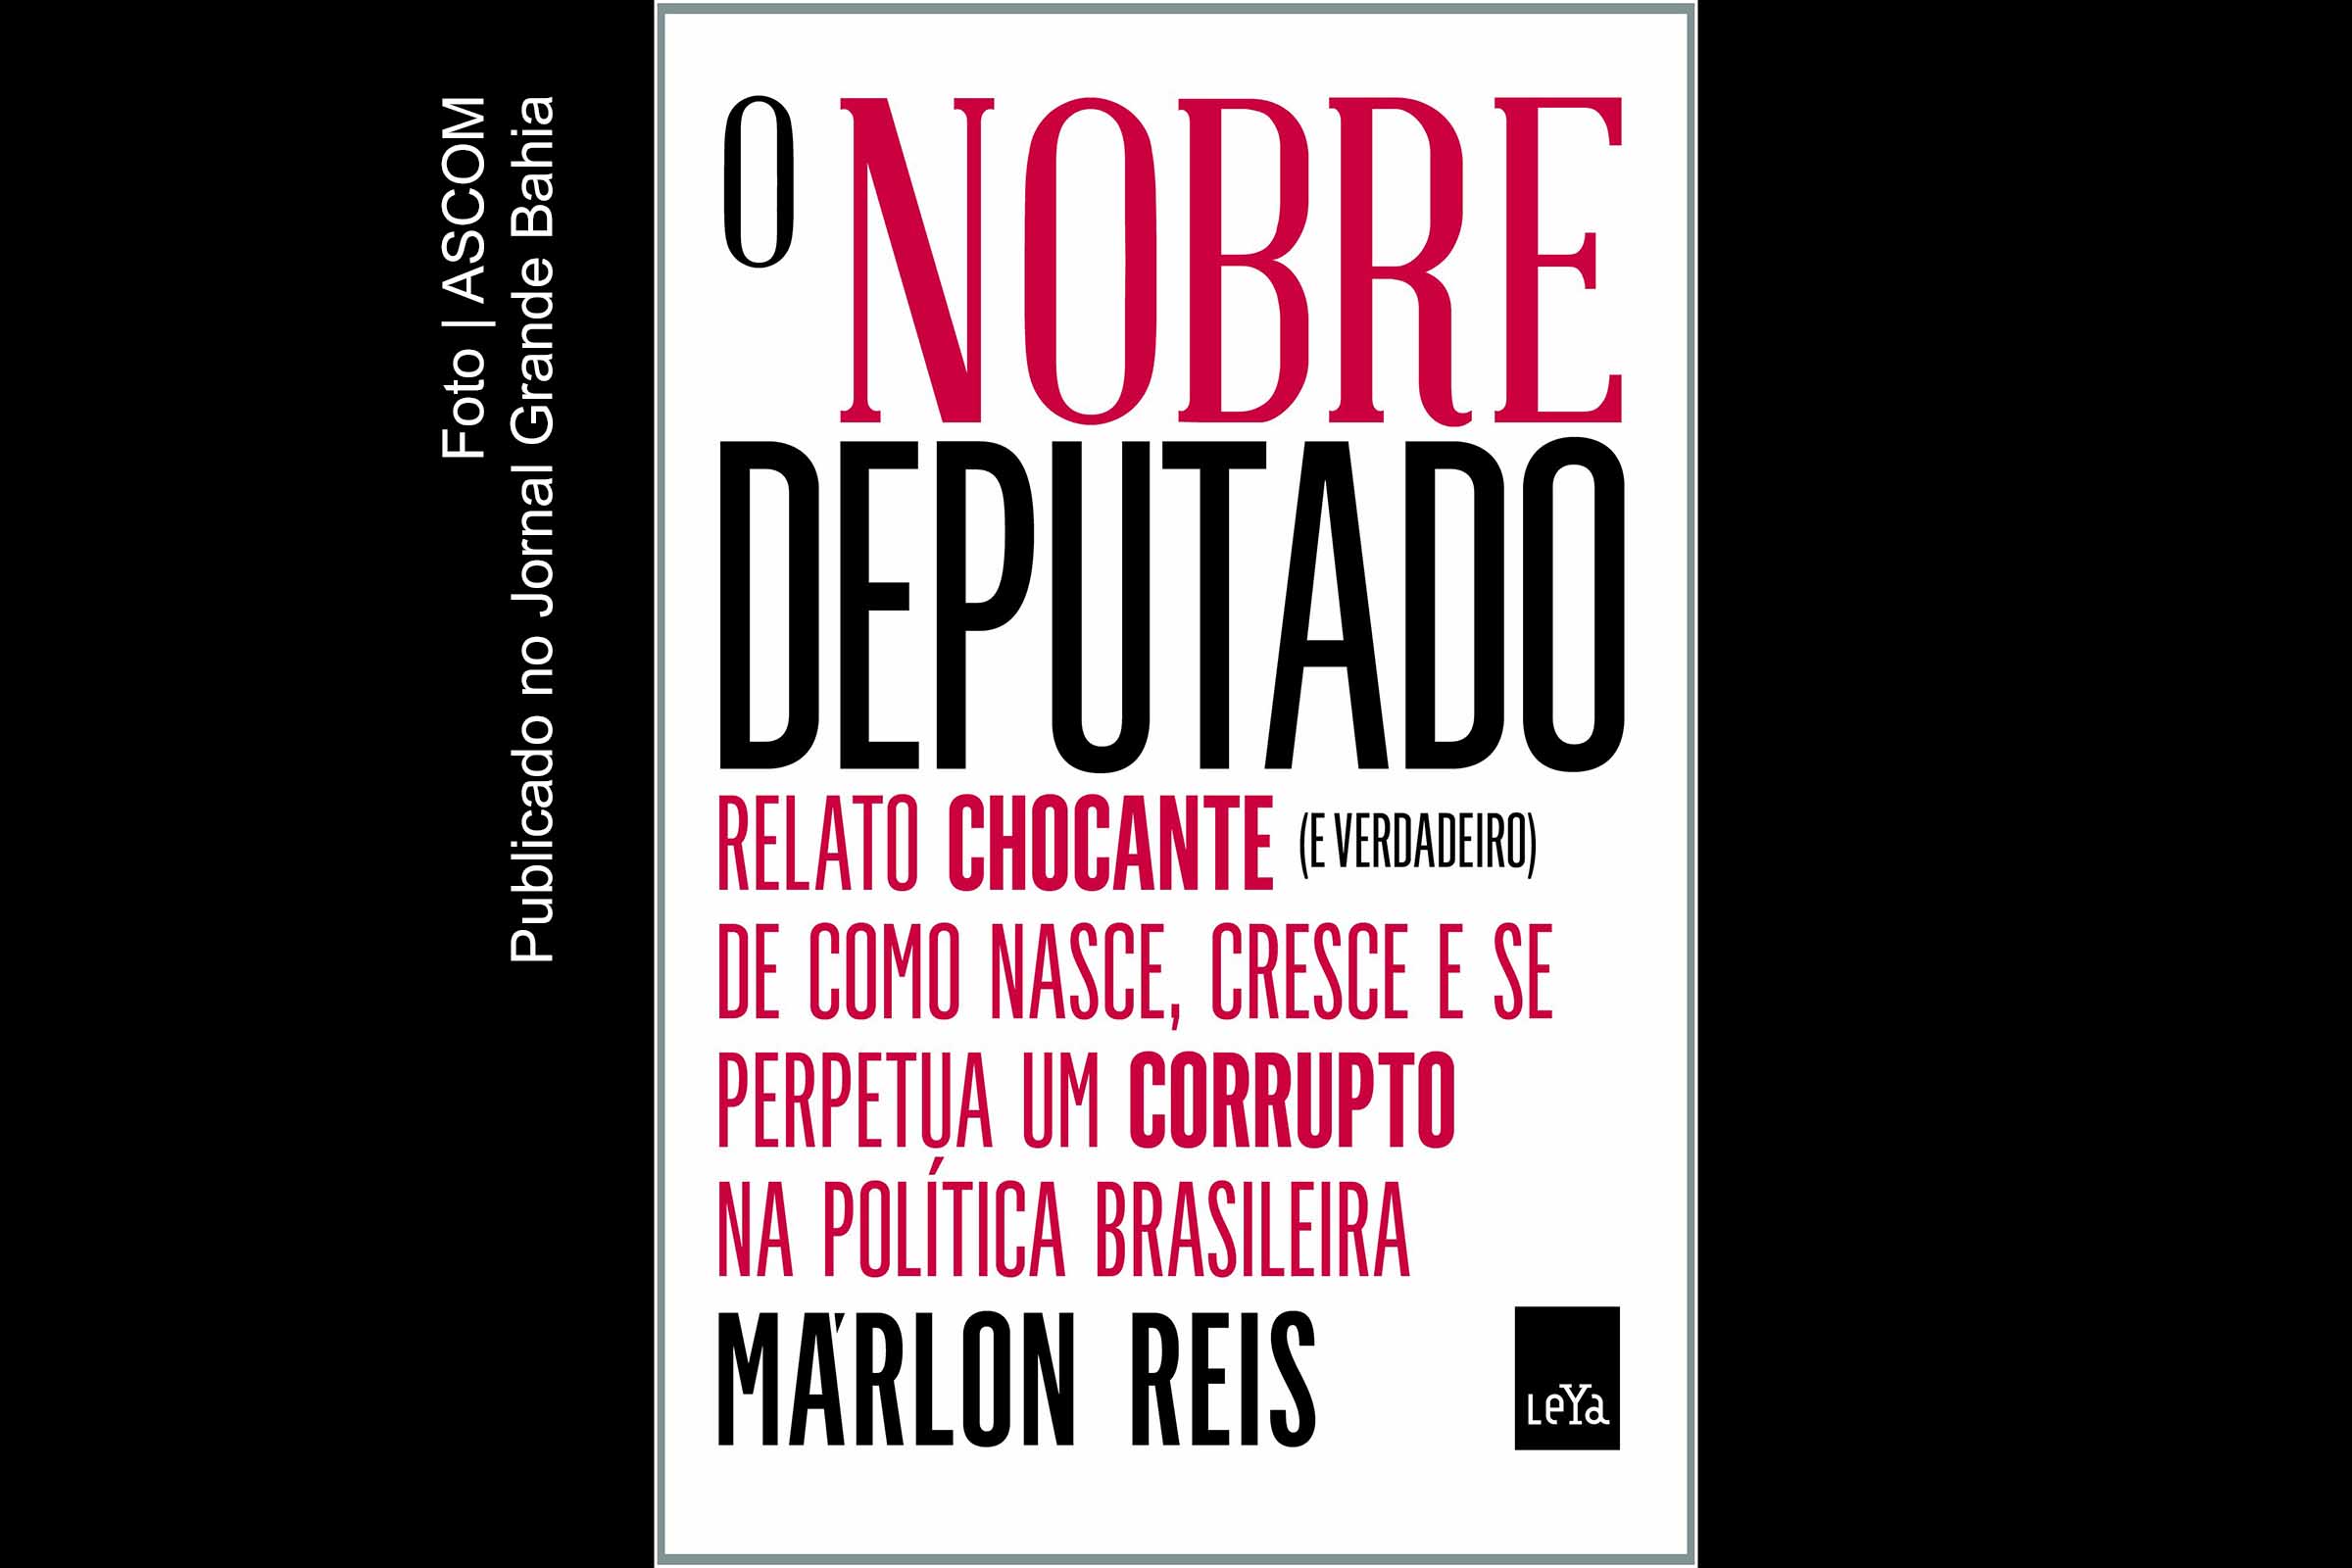 Capa do livro 'O Nobre Deputado', de autoria de Marlon Reis. Livro é narrado pelo nobre deputado Cândido Peçanha, uma personificação do que o autor viu e ouviu na carreira política.